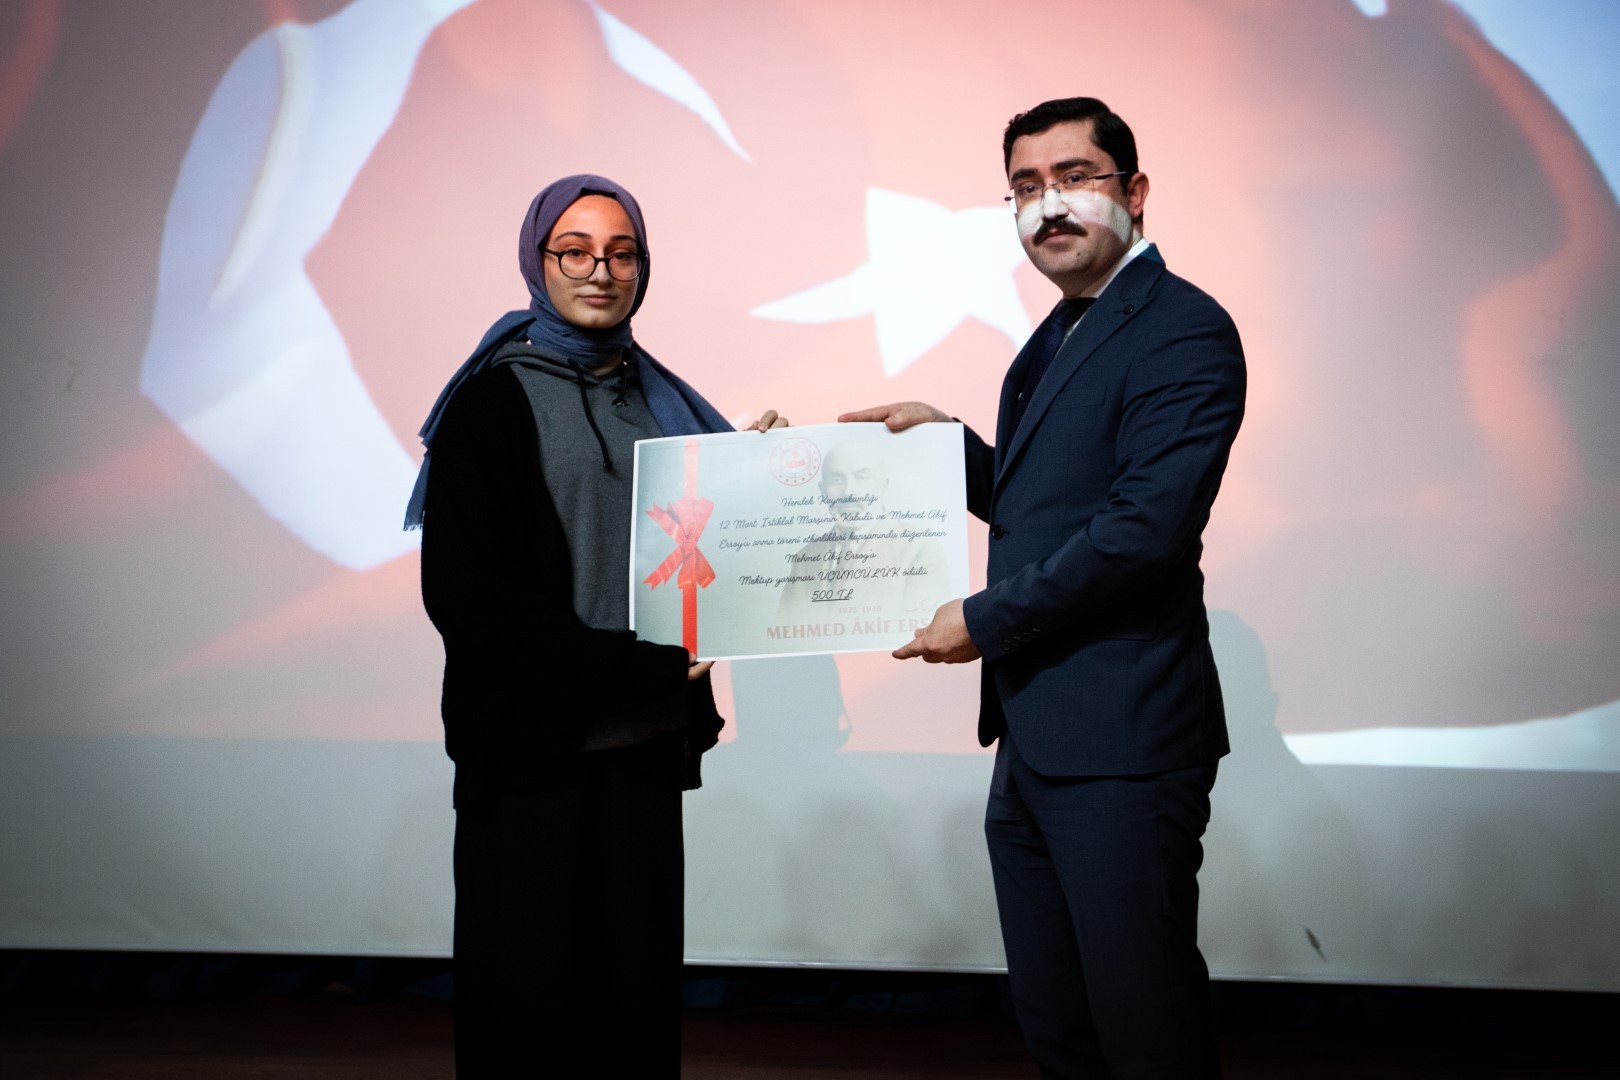 İstiklal Marşının Kabulü Ve Mehmet Akif Ersoy'u Anma Programı Düzenlendi6